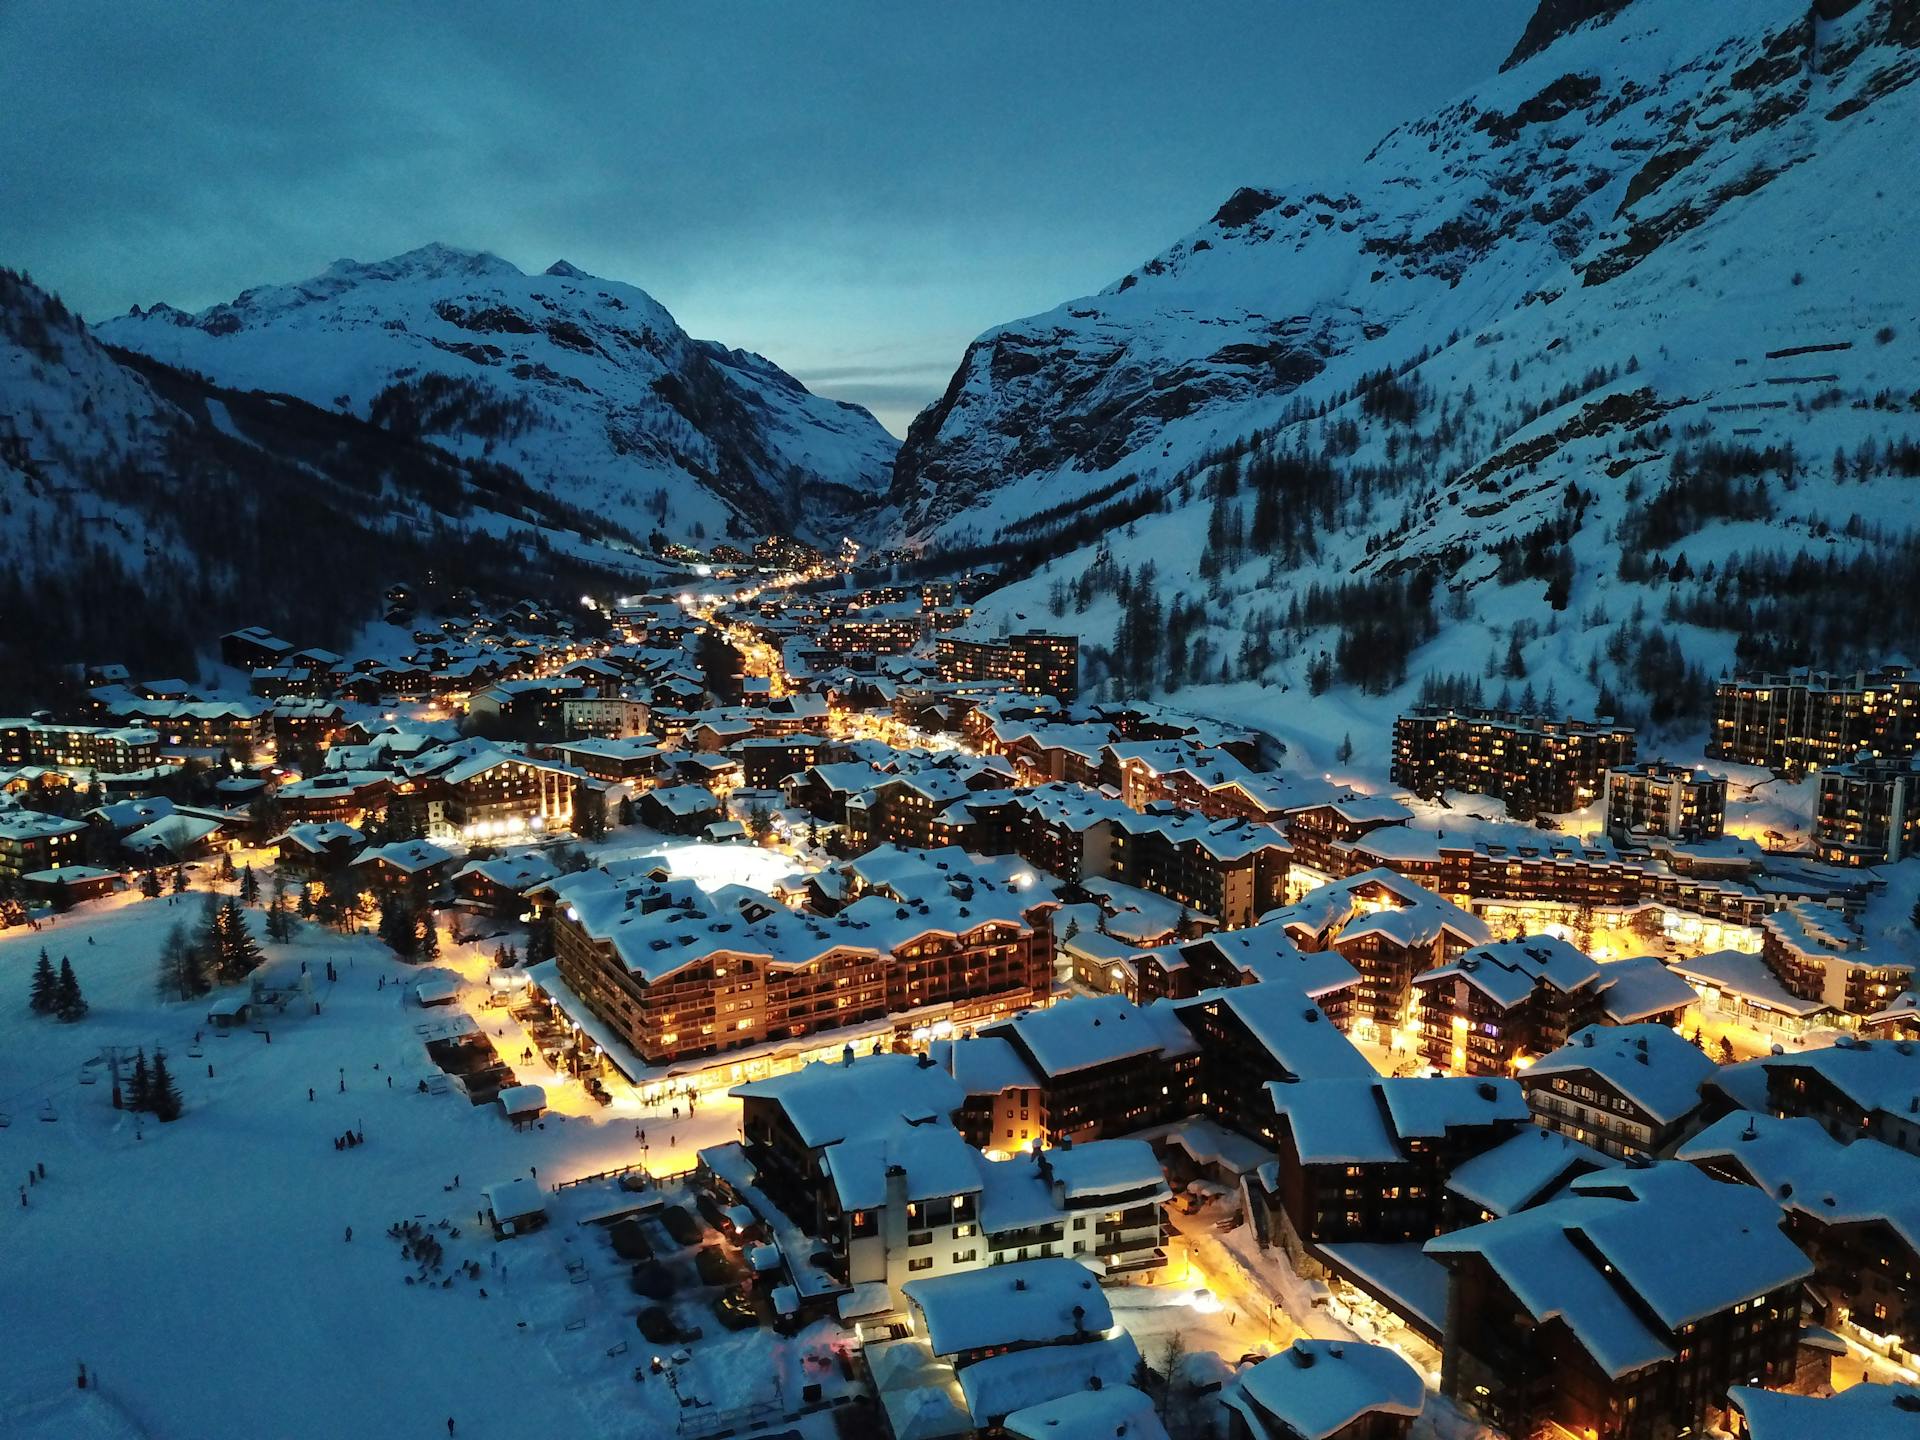 Val D'Isere ski resort at dusk with lights on